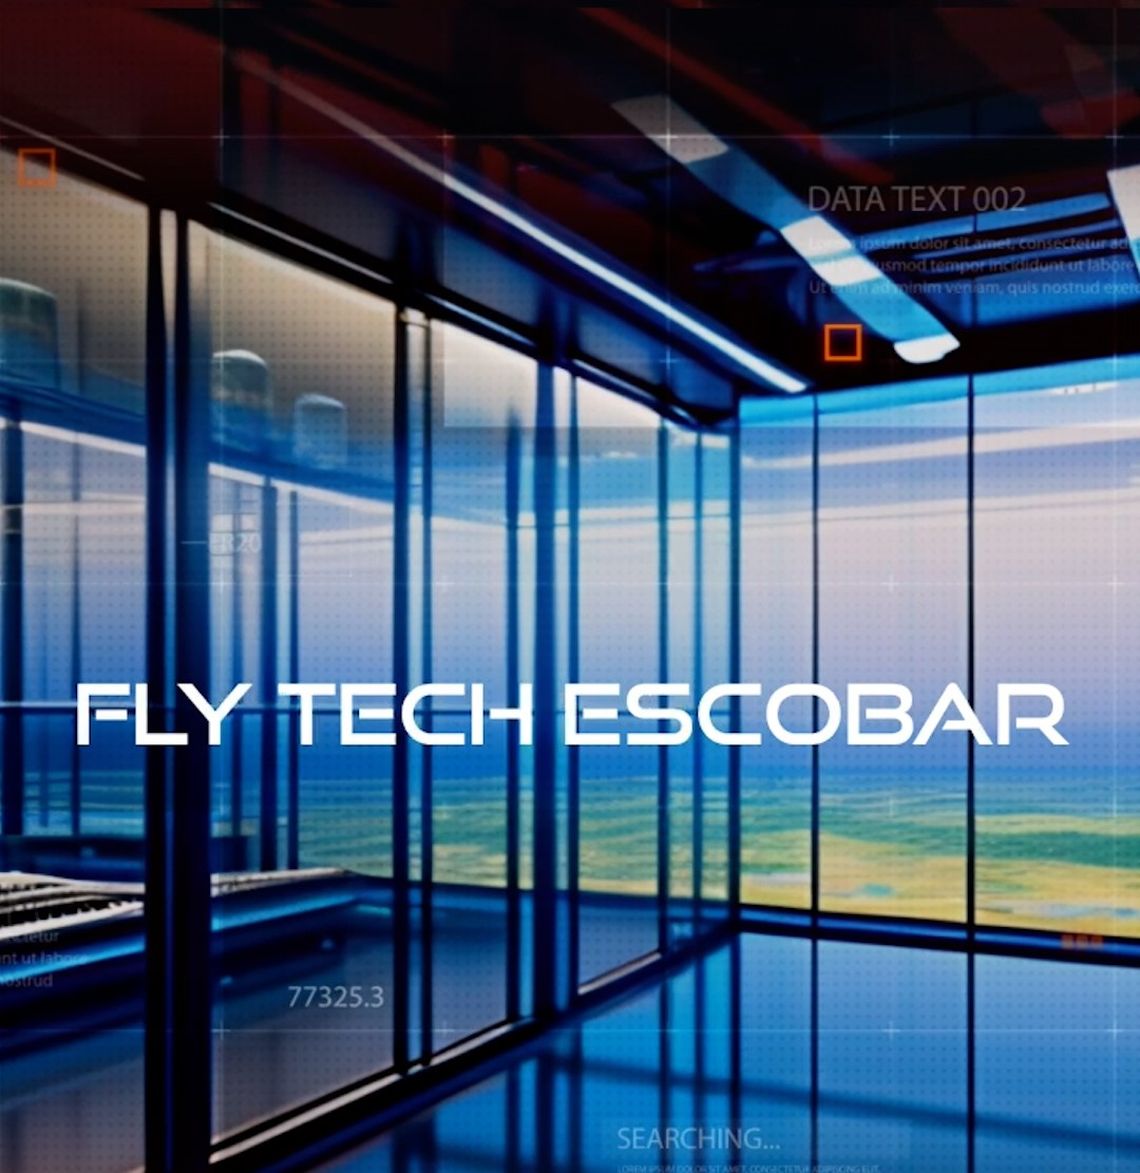 La Municipalidad de Escobar acordó la incorporación de la Fundación Argentina de Nanotecnología al nuevo Polo FlyTech.